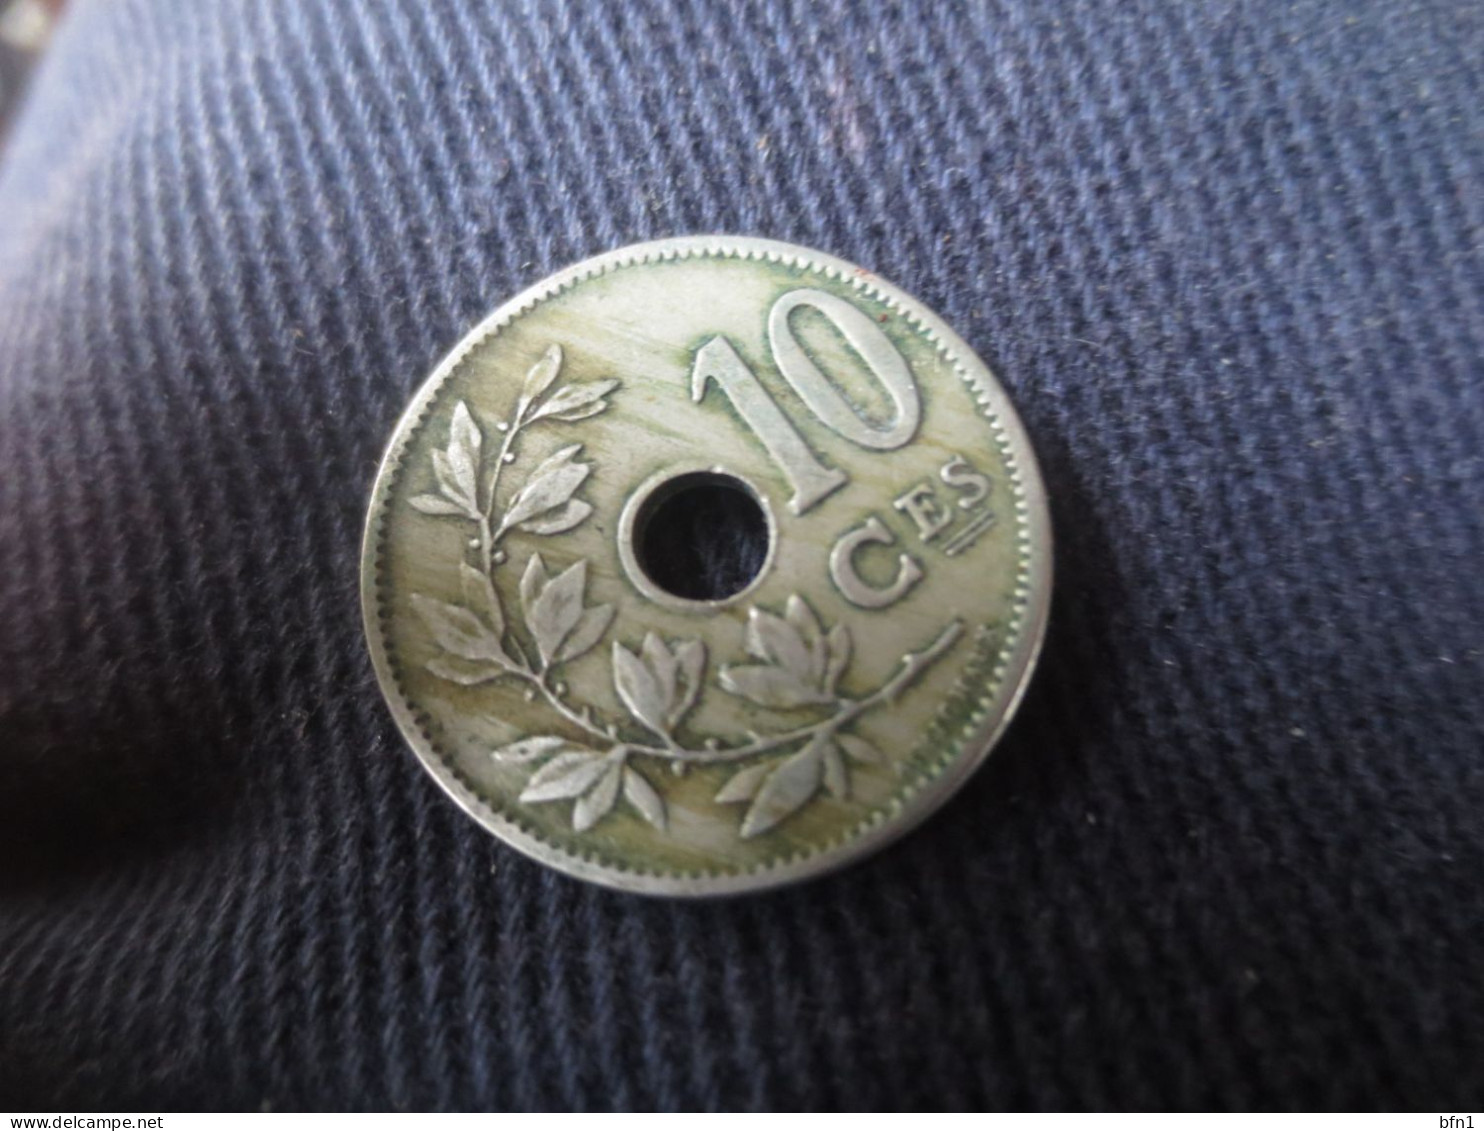 BELGIQUE 10 CENTIMES 1904 SUP - 5 Cents